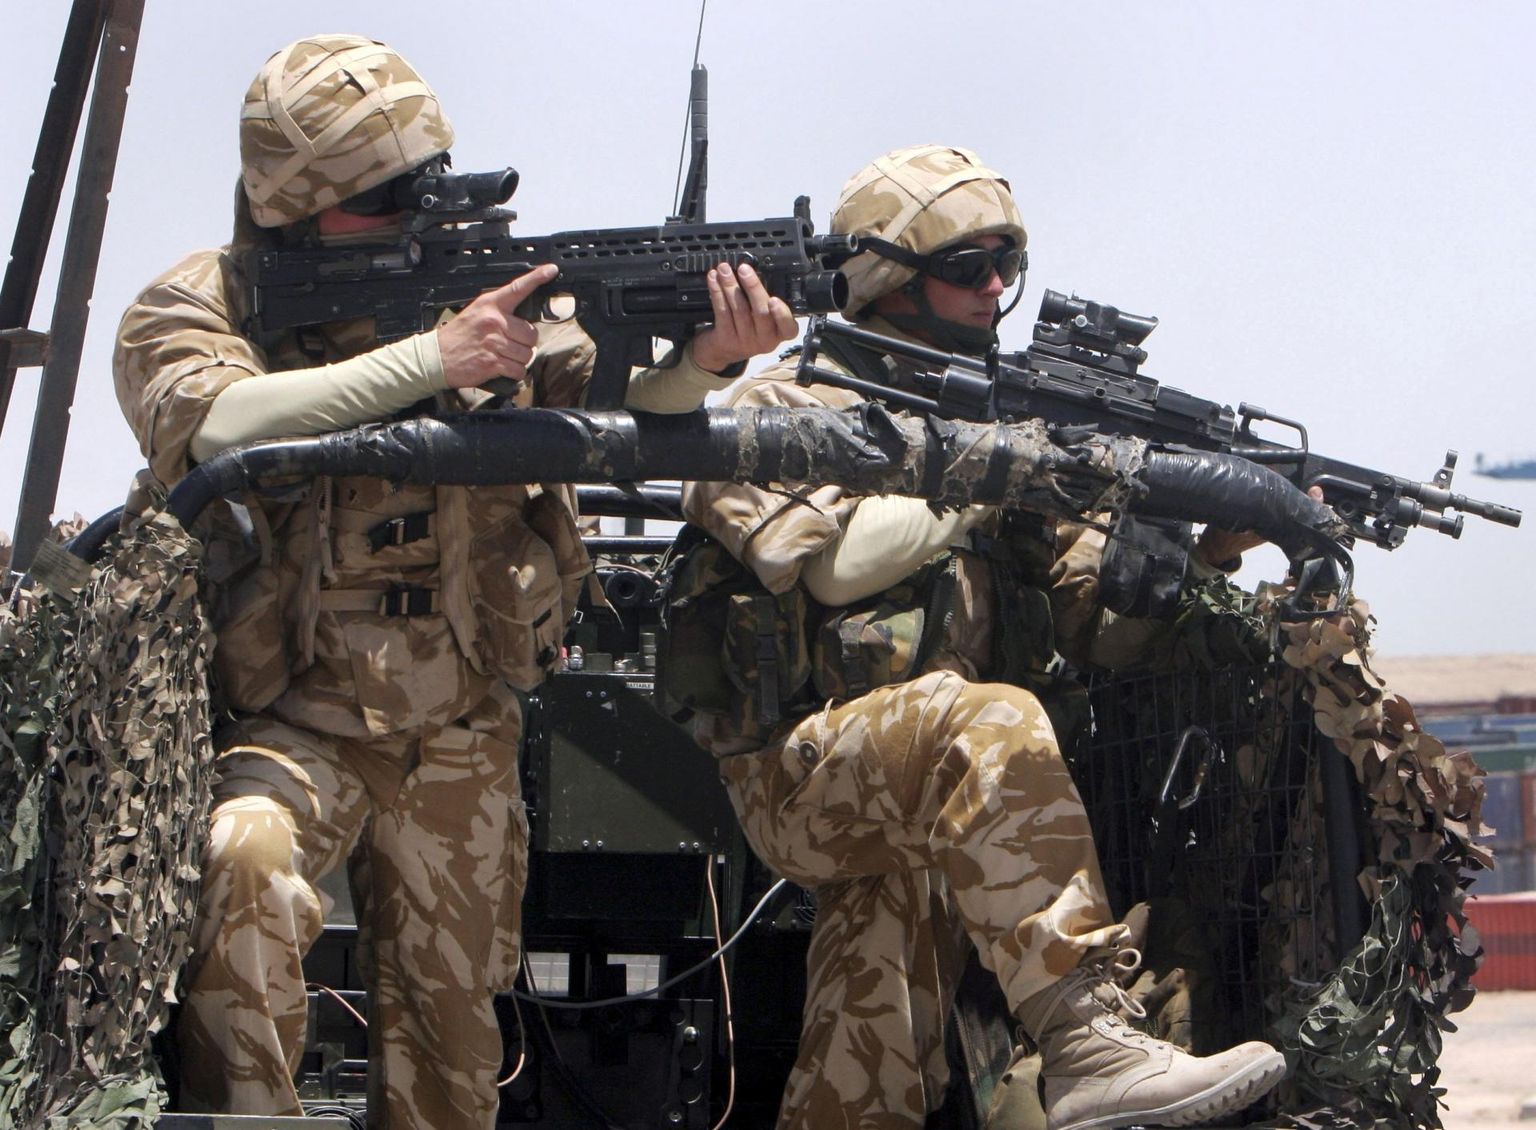 Briti sõdurid valvamas Umm Qasri sadamat Basras Iraagis 2007. aasta kevadel.